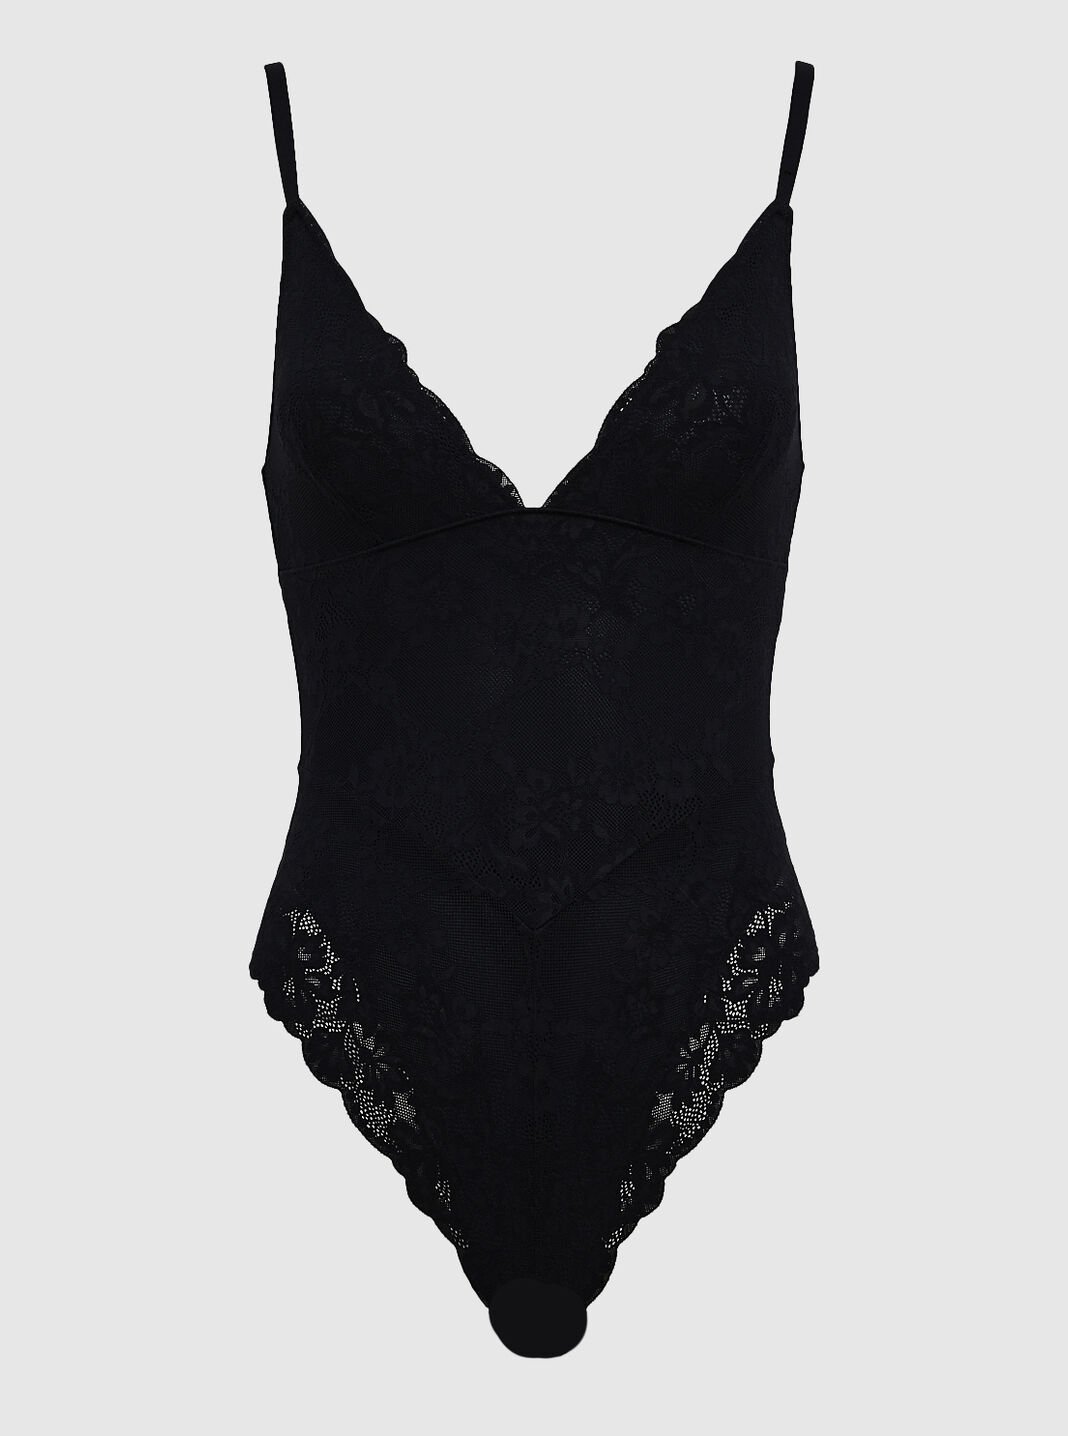 BLACK Mesh lace insert bodysuit, Womens Lingerie